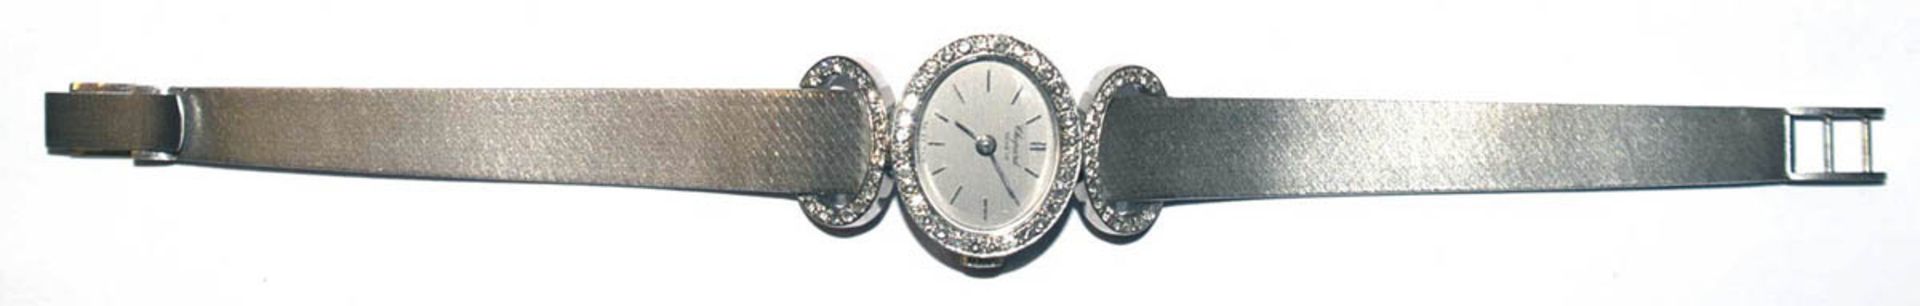 Damen-Armbanduhr "Chopard", Genève, 750er WG, Handaufzug, Schauseite besetzt 68 BrillantenVSI/IF,